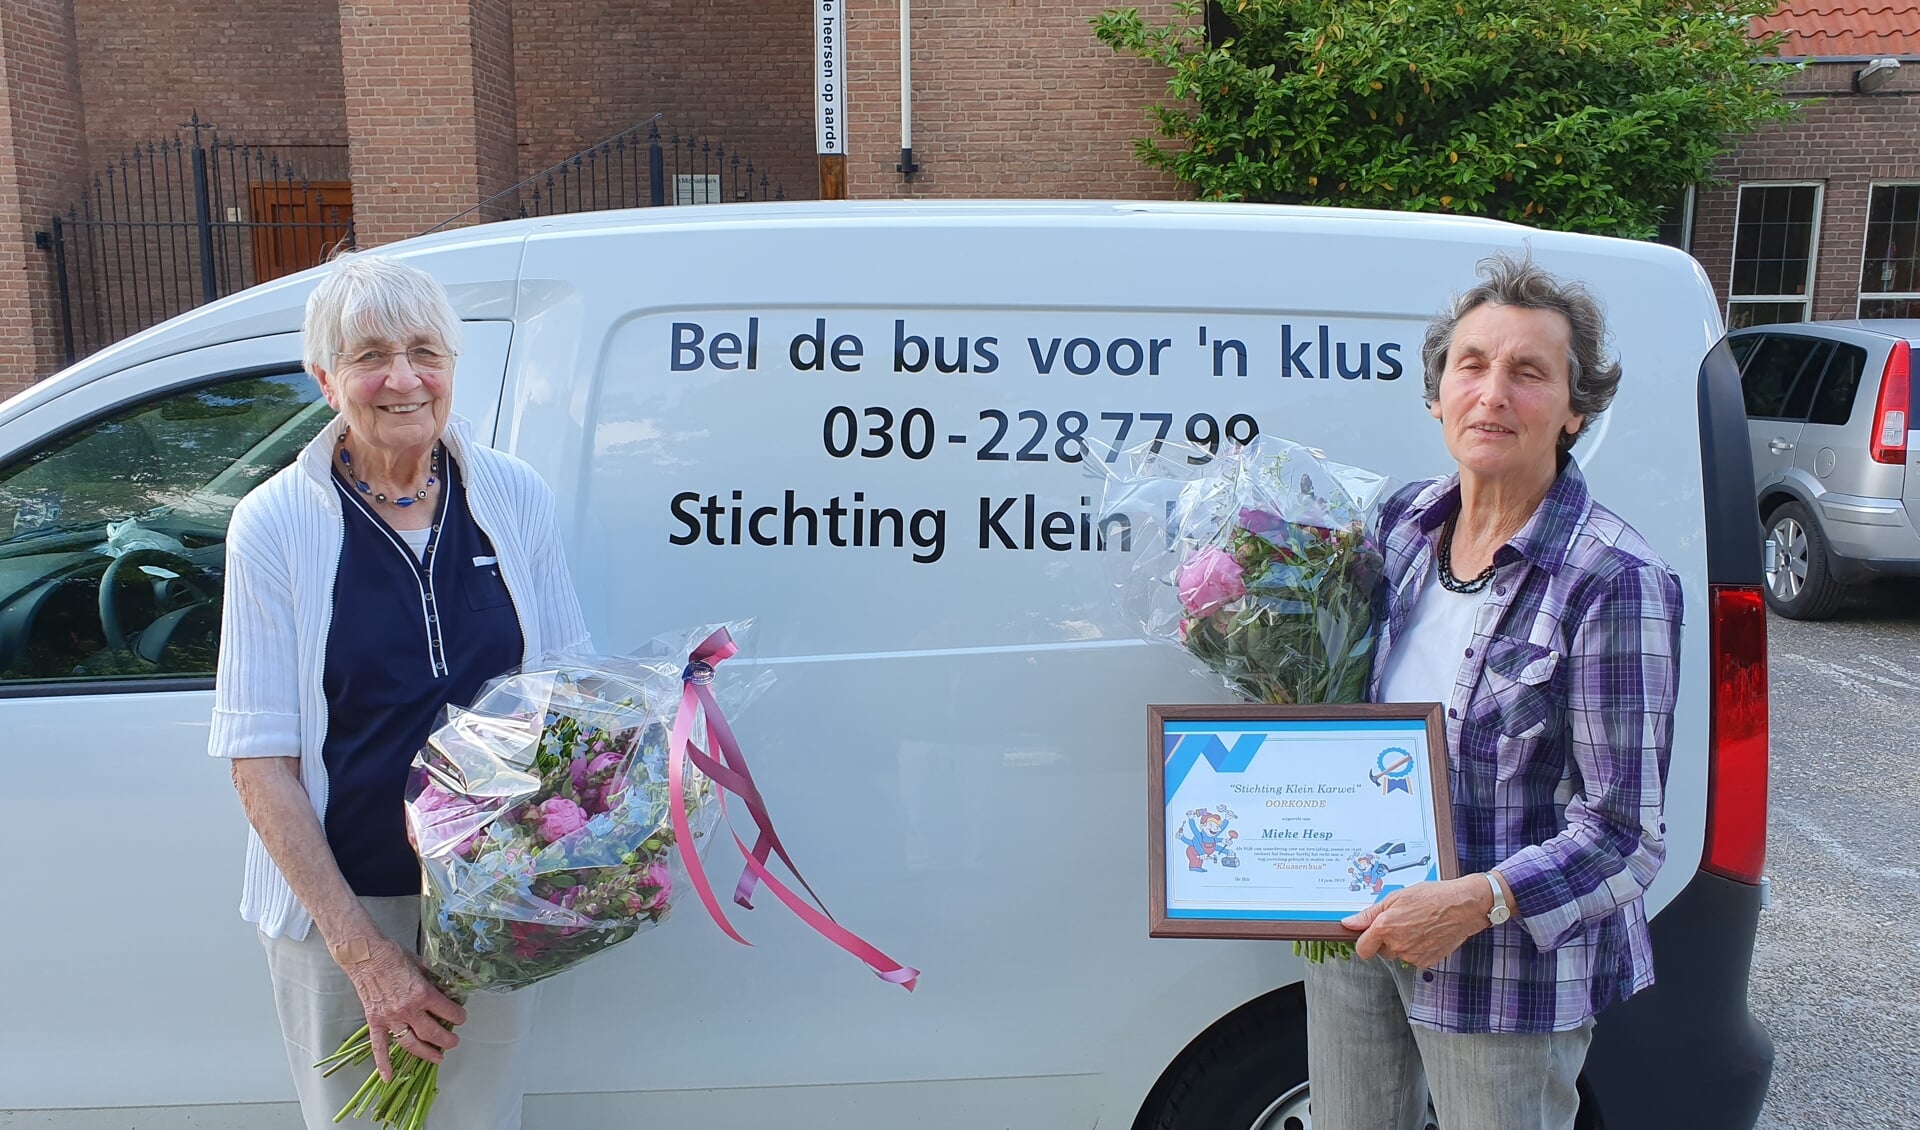 Na jarenlang vrijwilliger te zijn geweest zetten Wil en Mieke een punt achter hun werk voor Stichting Klein Karwei.